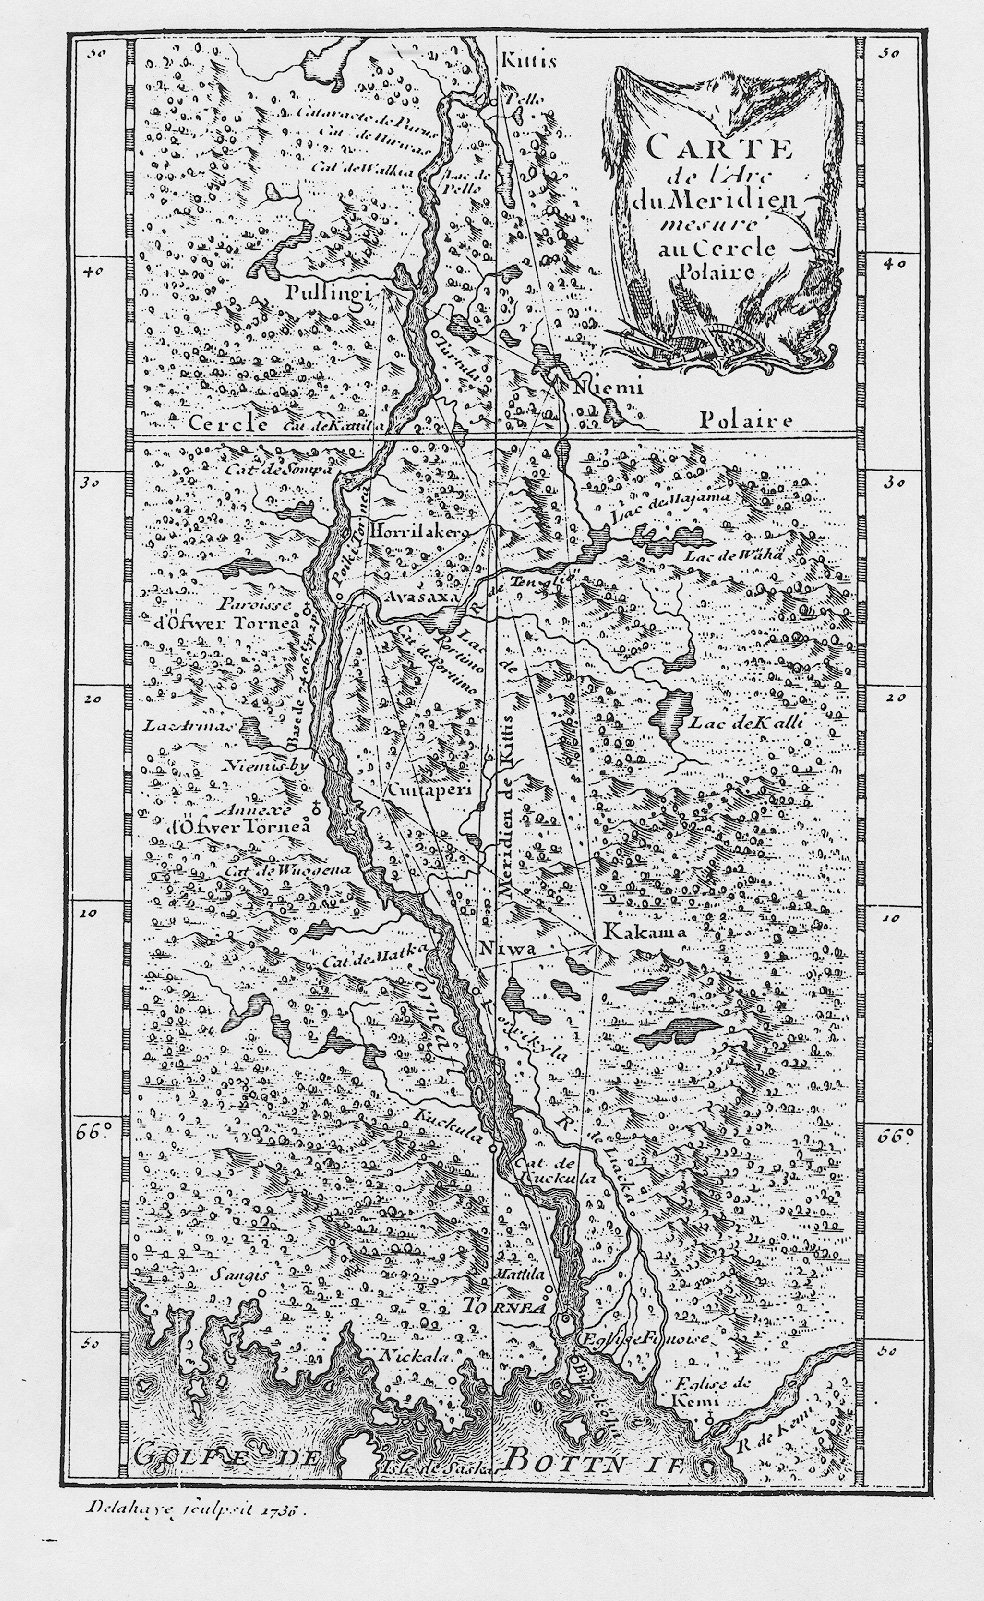 Mapa mostrando lo lugares donde realizó las medidas Maupertuis en su expedición a Laponia, en "La Figure de la Terre" (1738) http://commons.wikimedia.org/wiki/File:Maupertuis_map.jpg